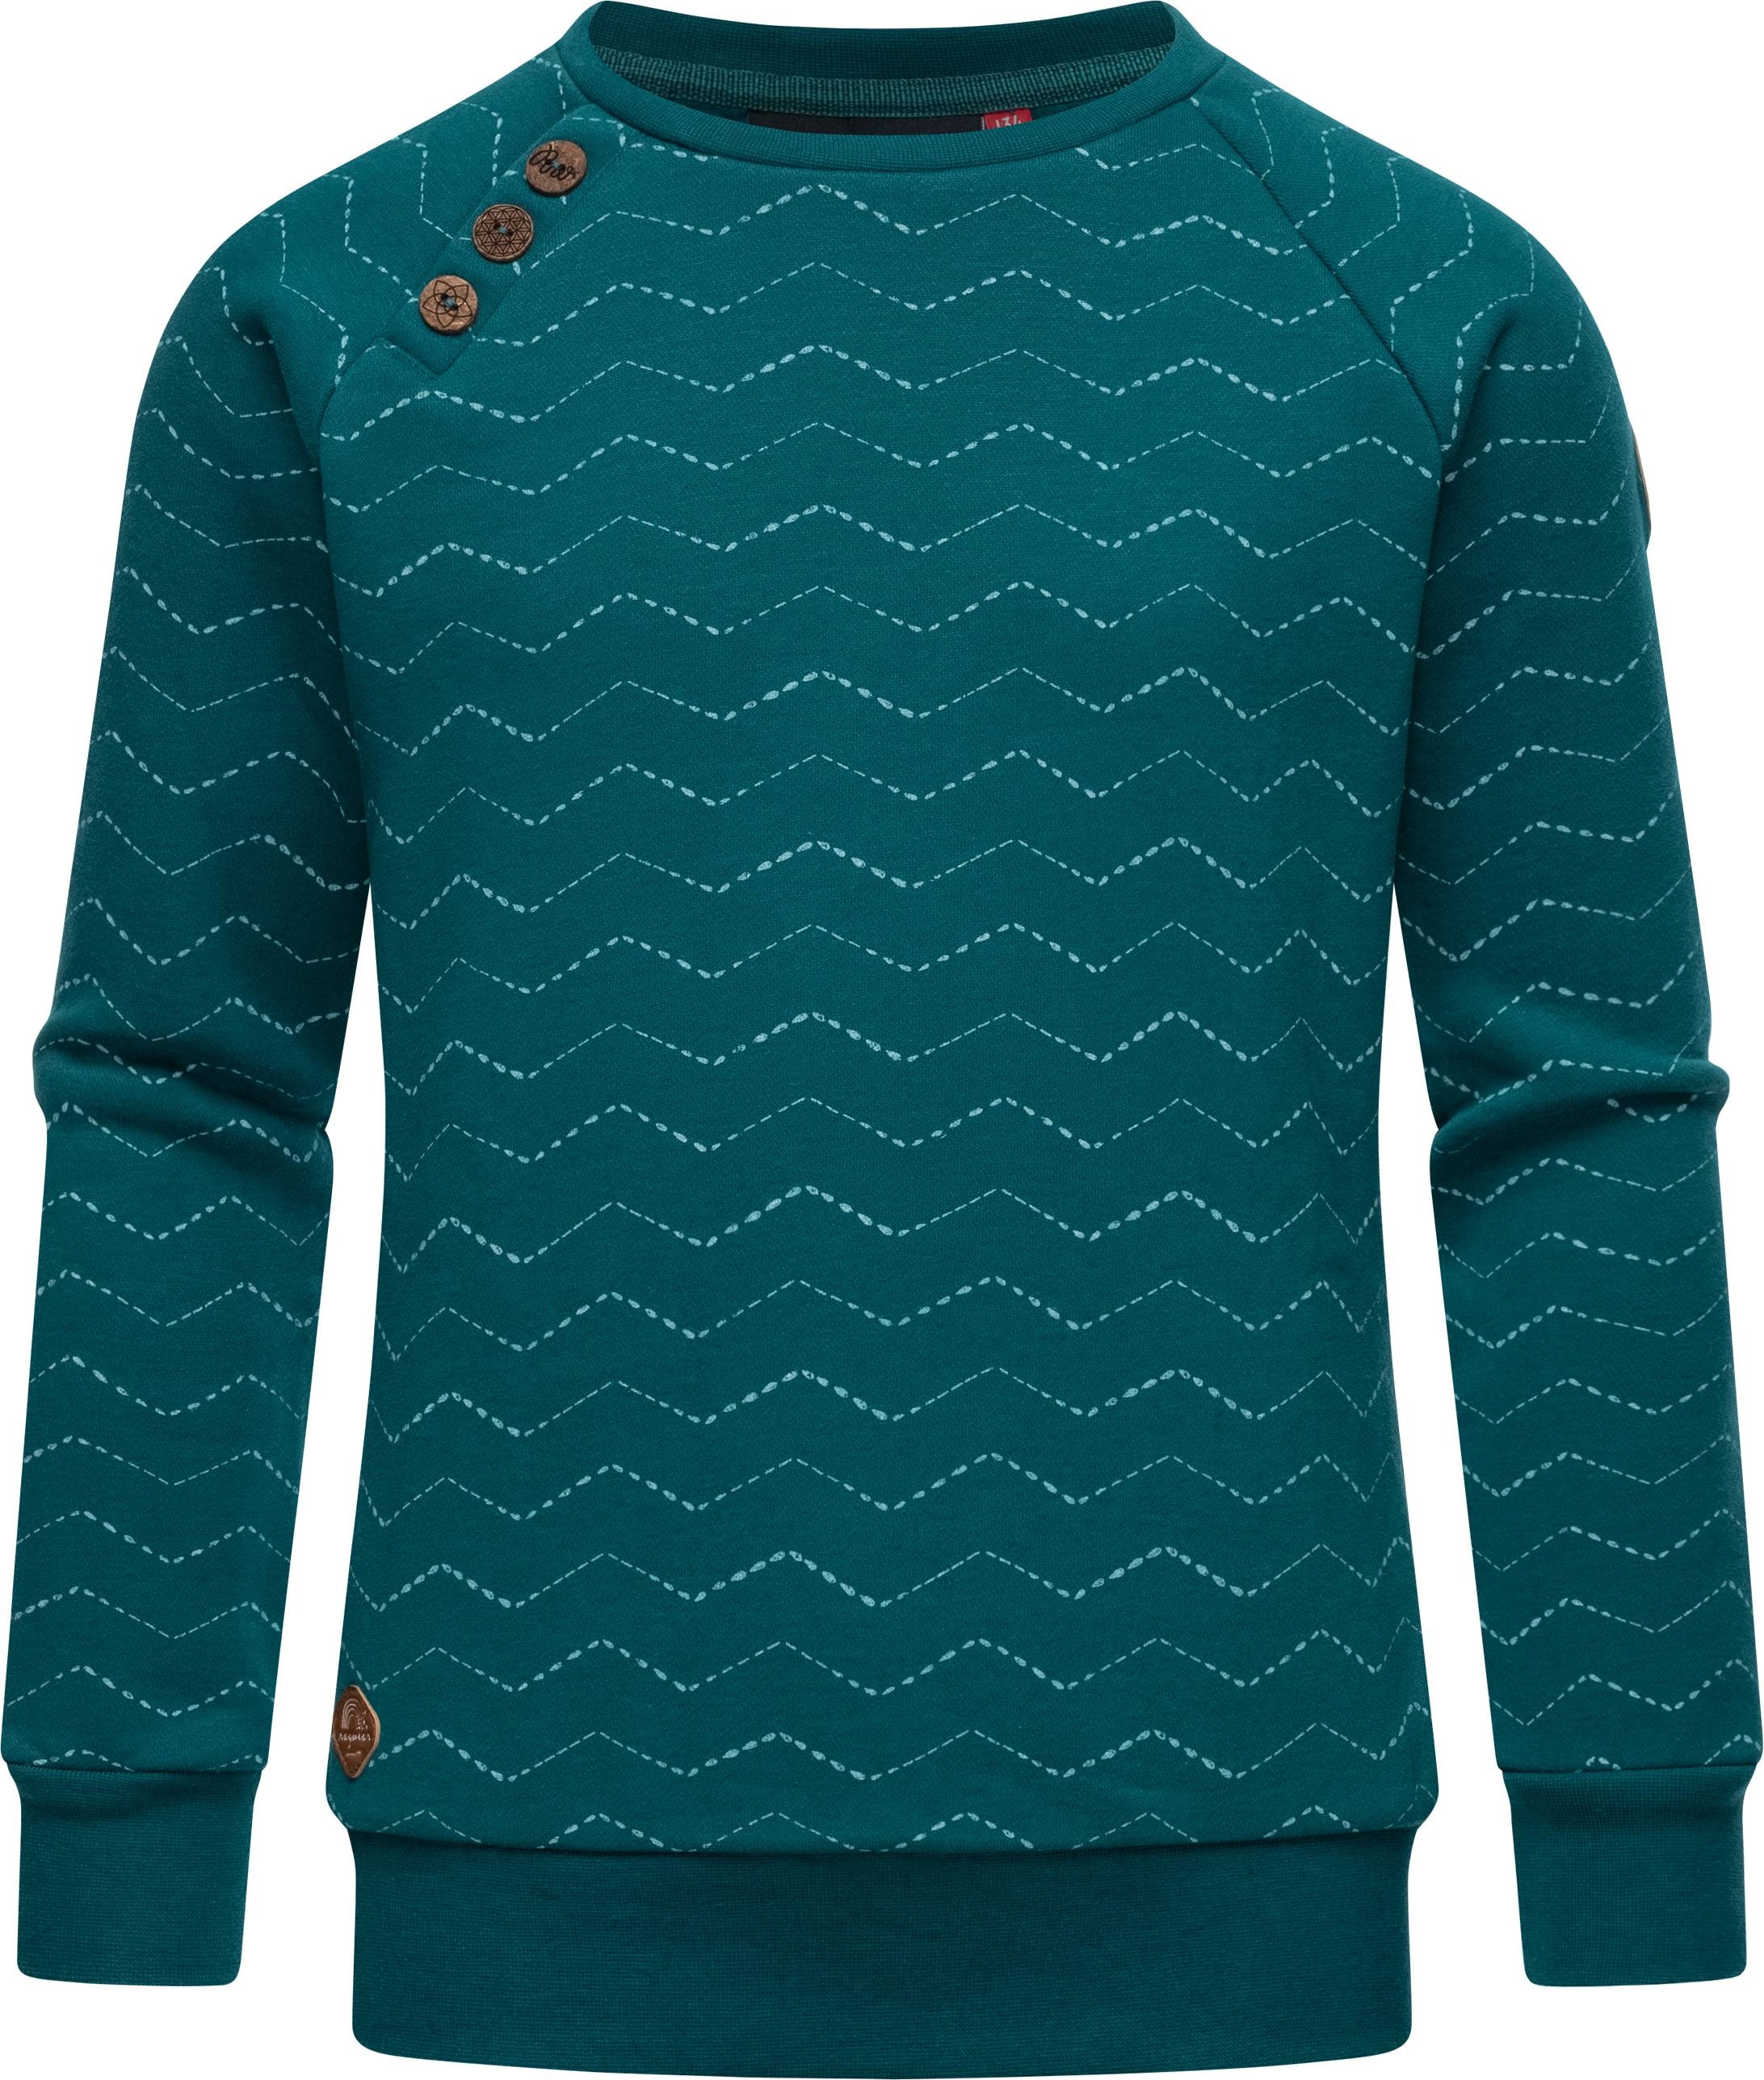 Sweater »Darinka Zig Zag«, stylisches Mädchen Sweatshirt mit Zick-Zack-Muster